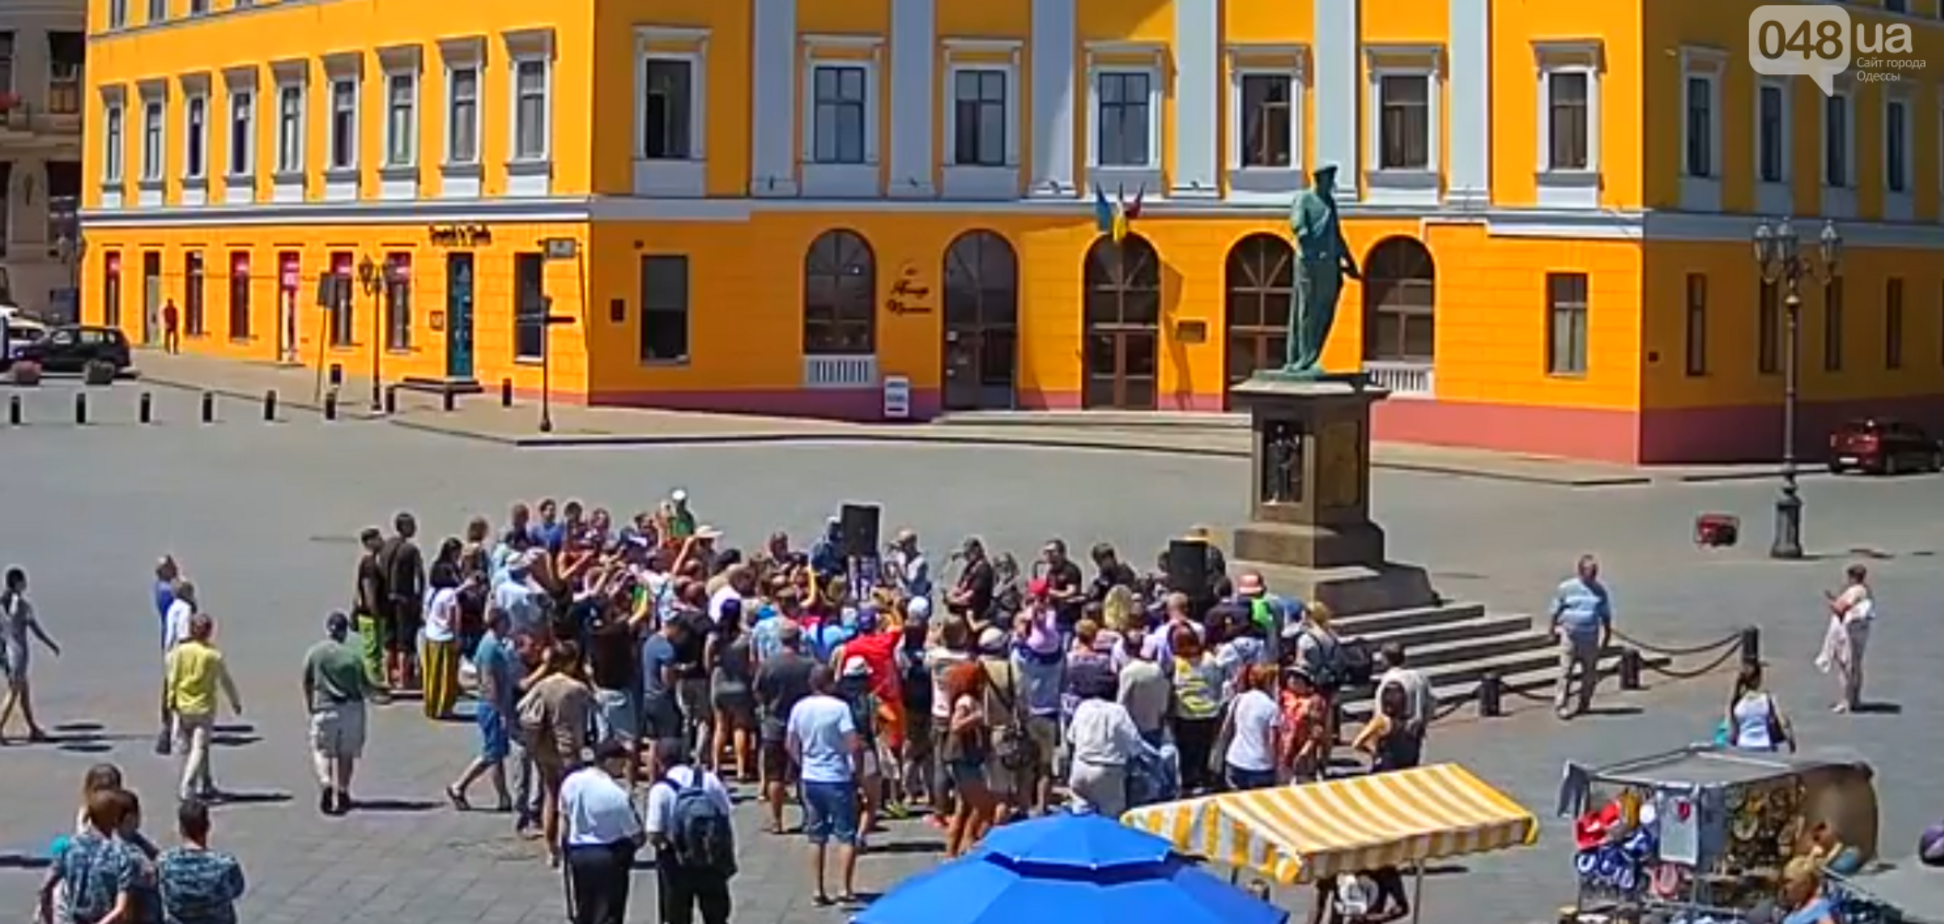 Борис Гребенщиков внезапно выступил в Одессе: фото и видео 